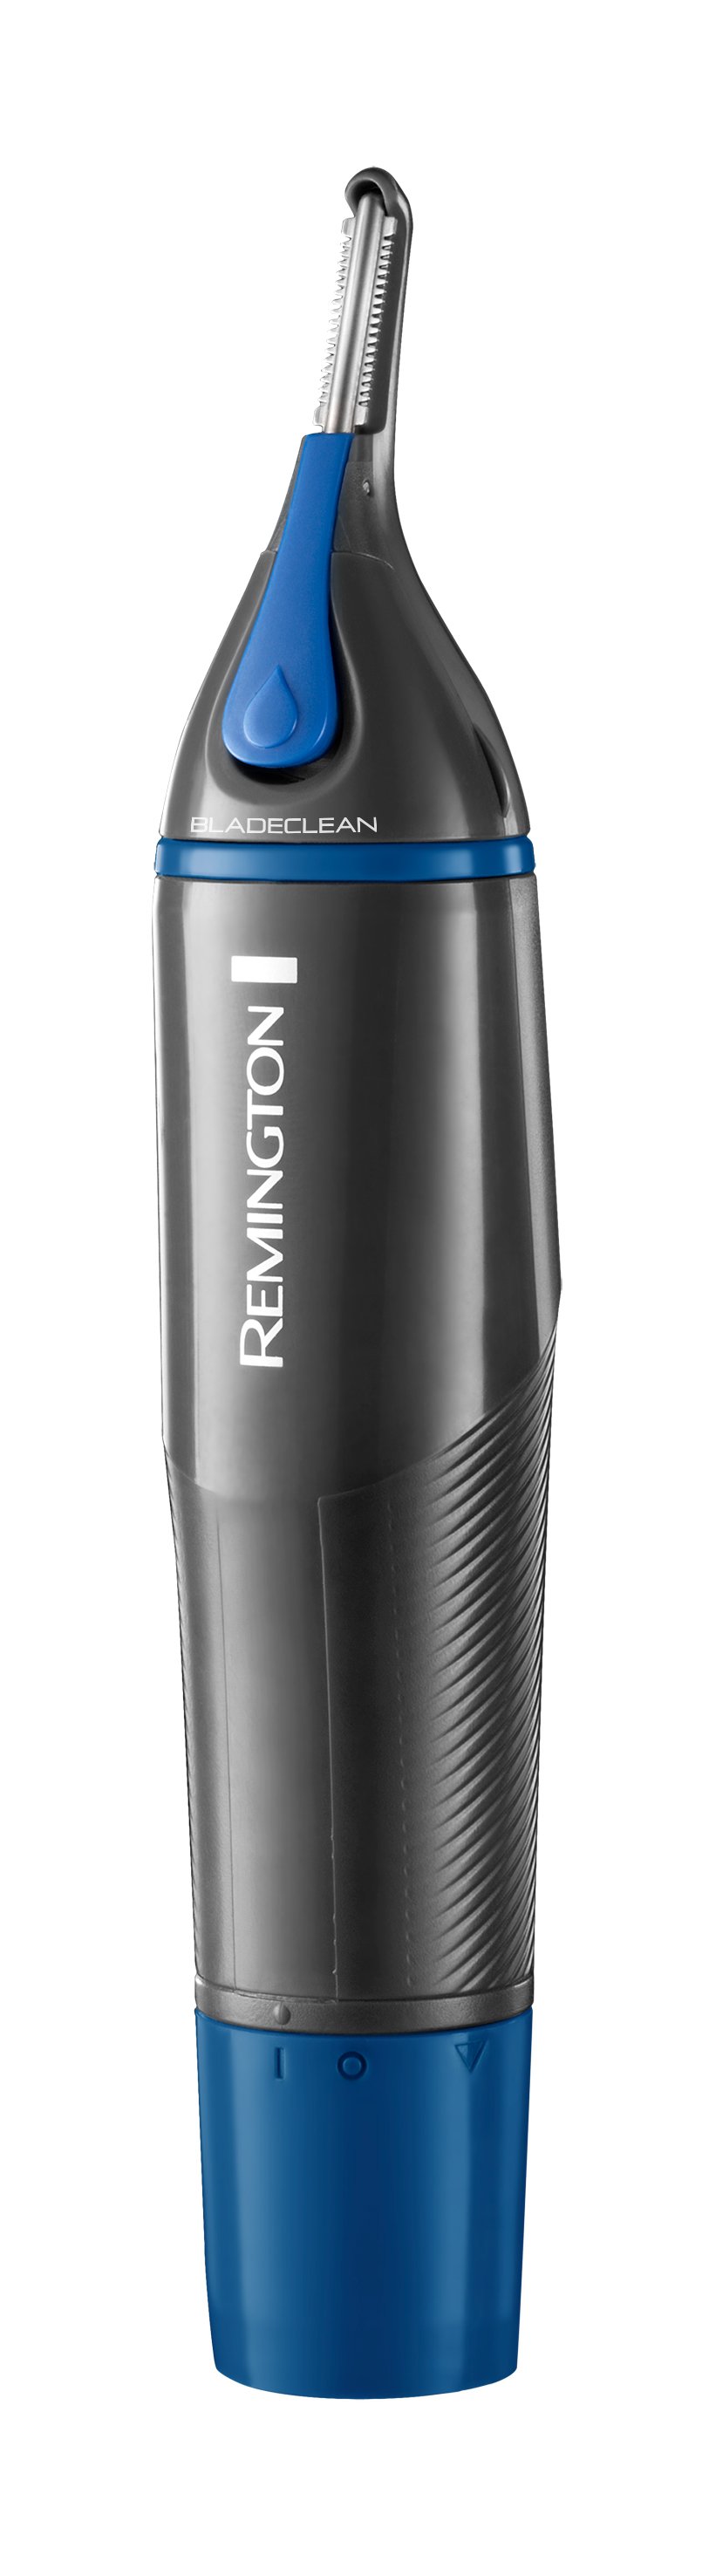 Remington - Nano Series Nose&Rotary Trimmer NE3850 von Remington